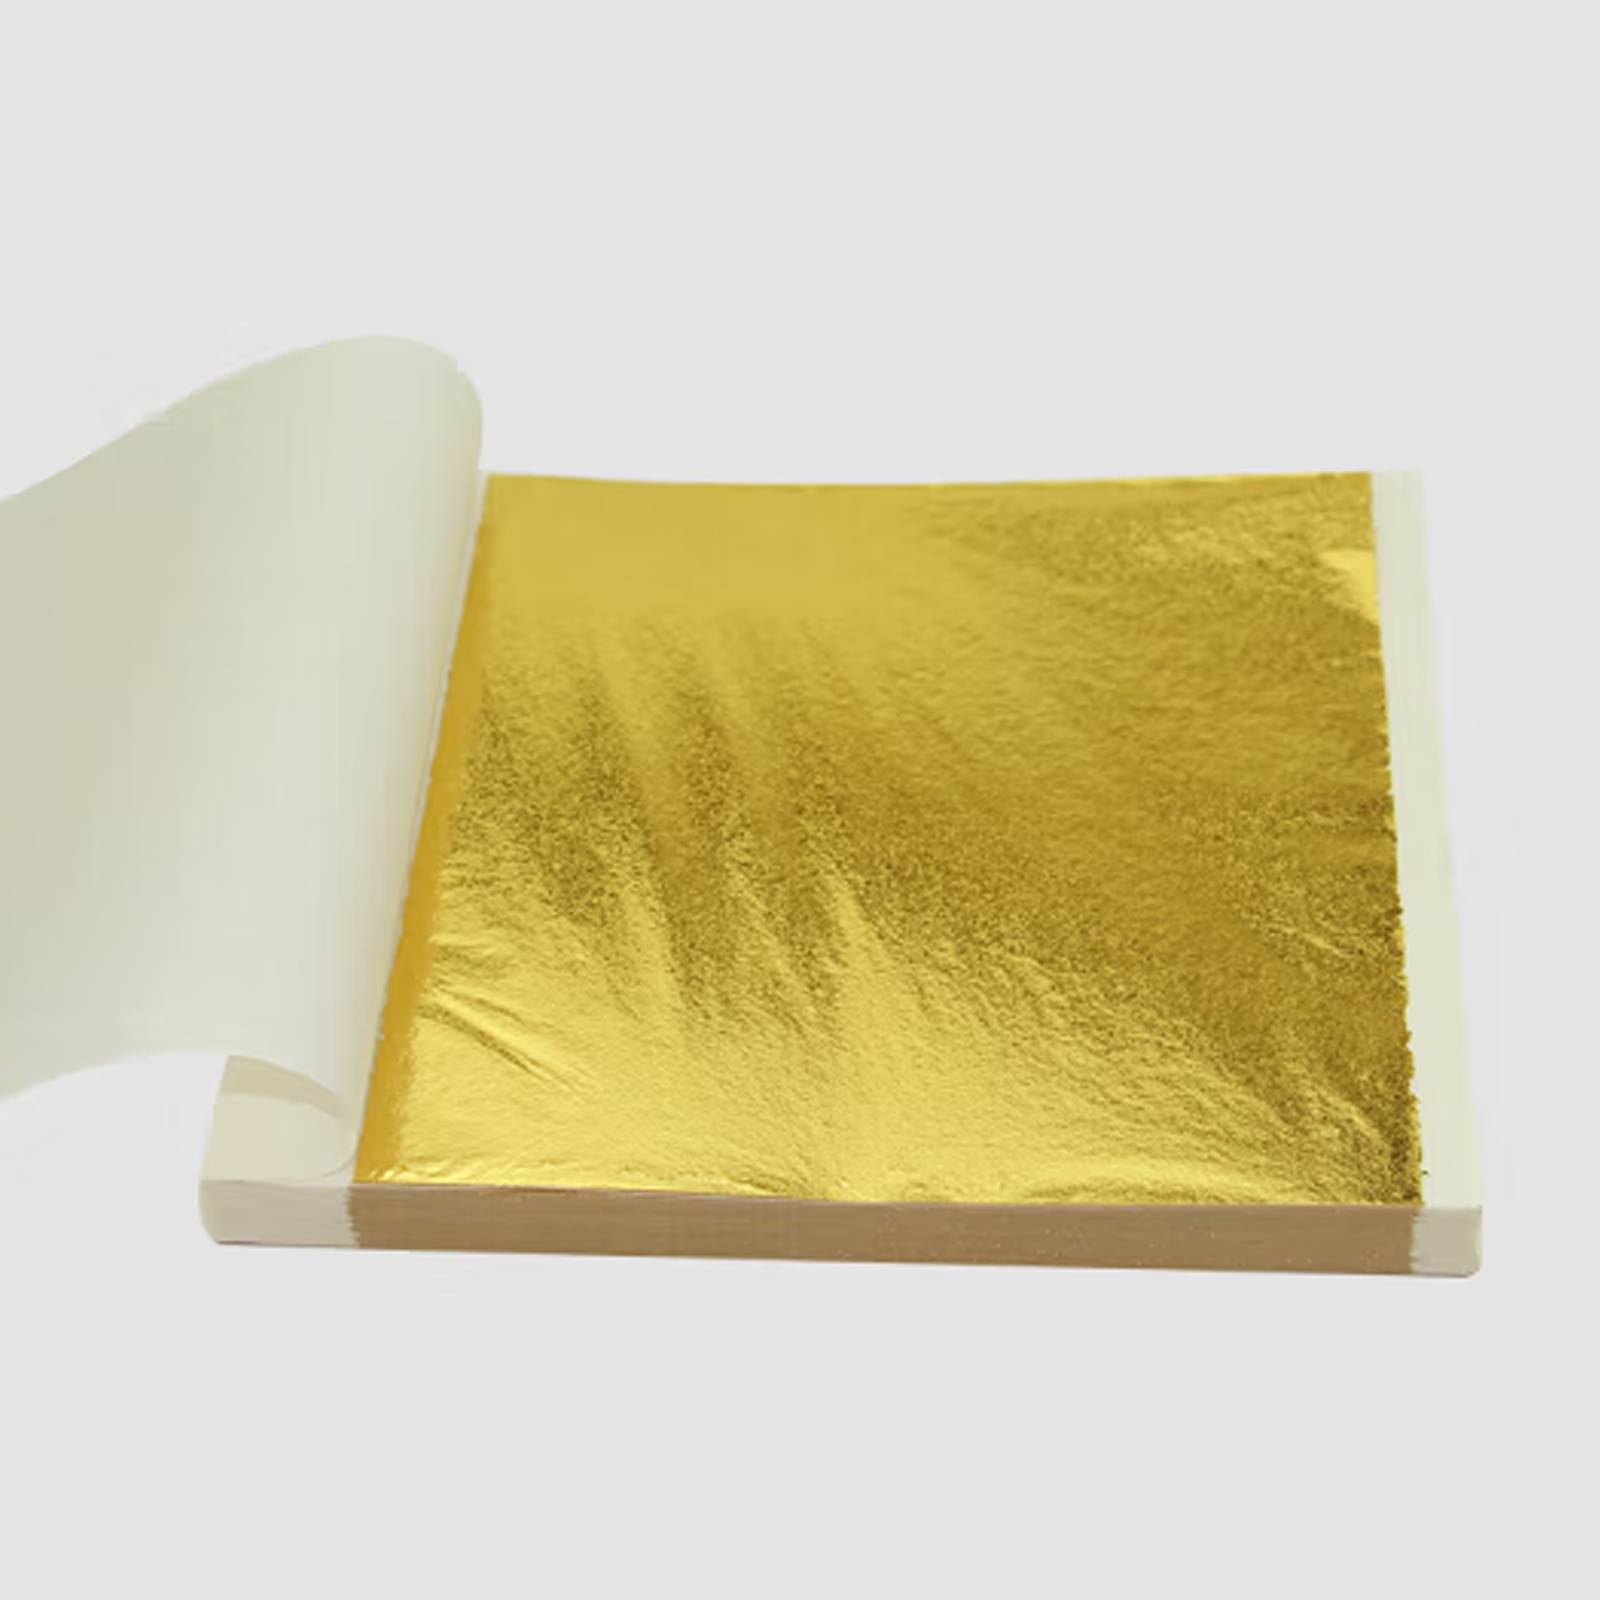 Imitation Gold Foil Leaf Sheet For Decorating Wall Art Crafts